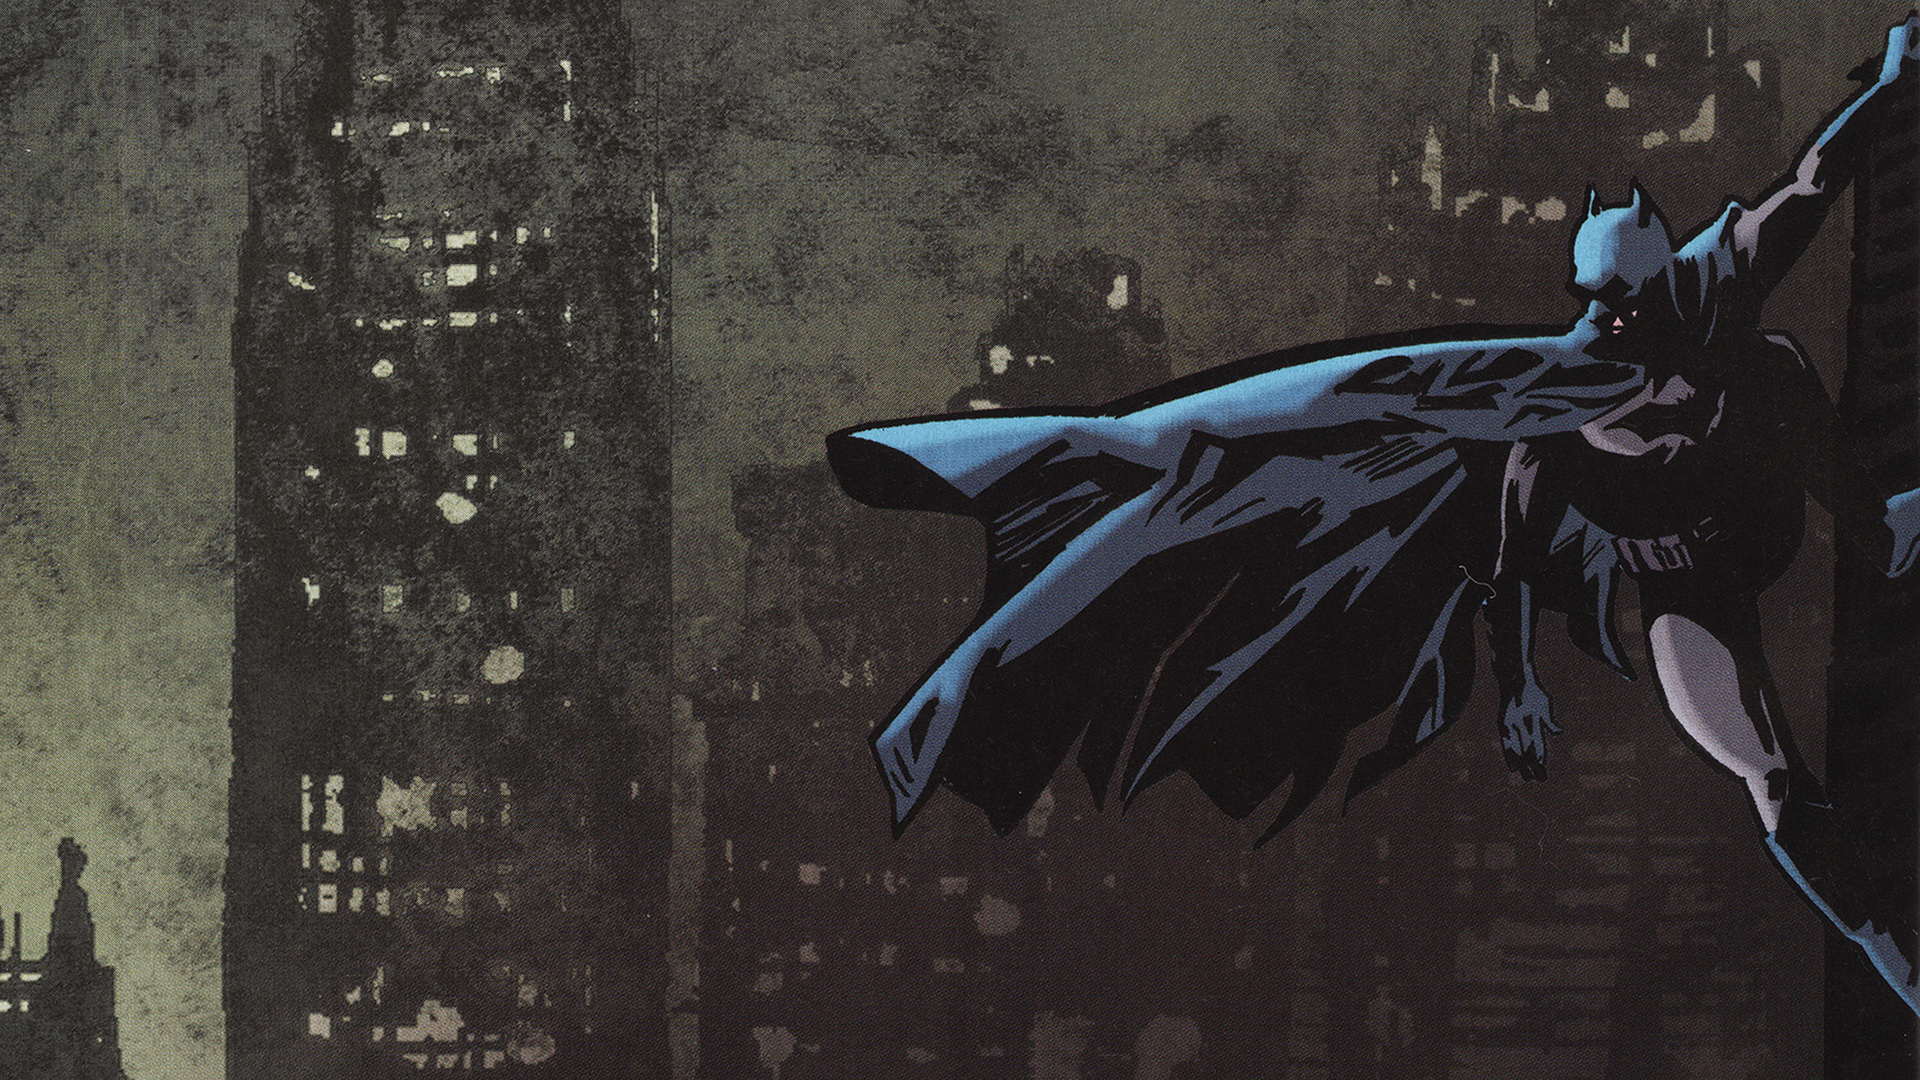 Batman Digital Art wallpaper ( click it and wait a sec for high